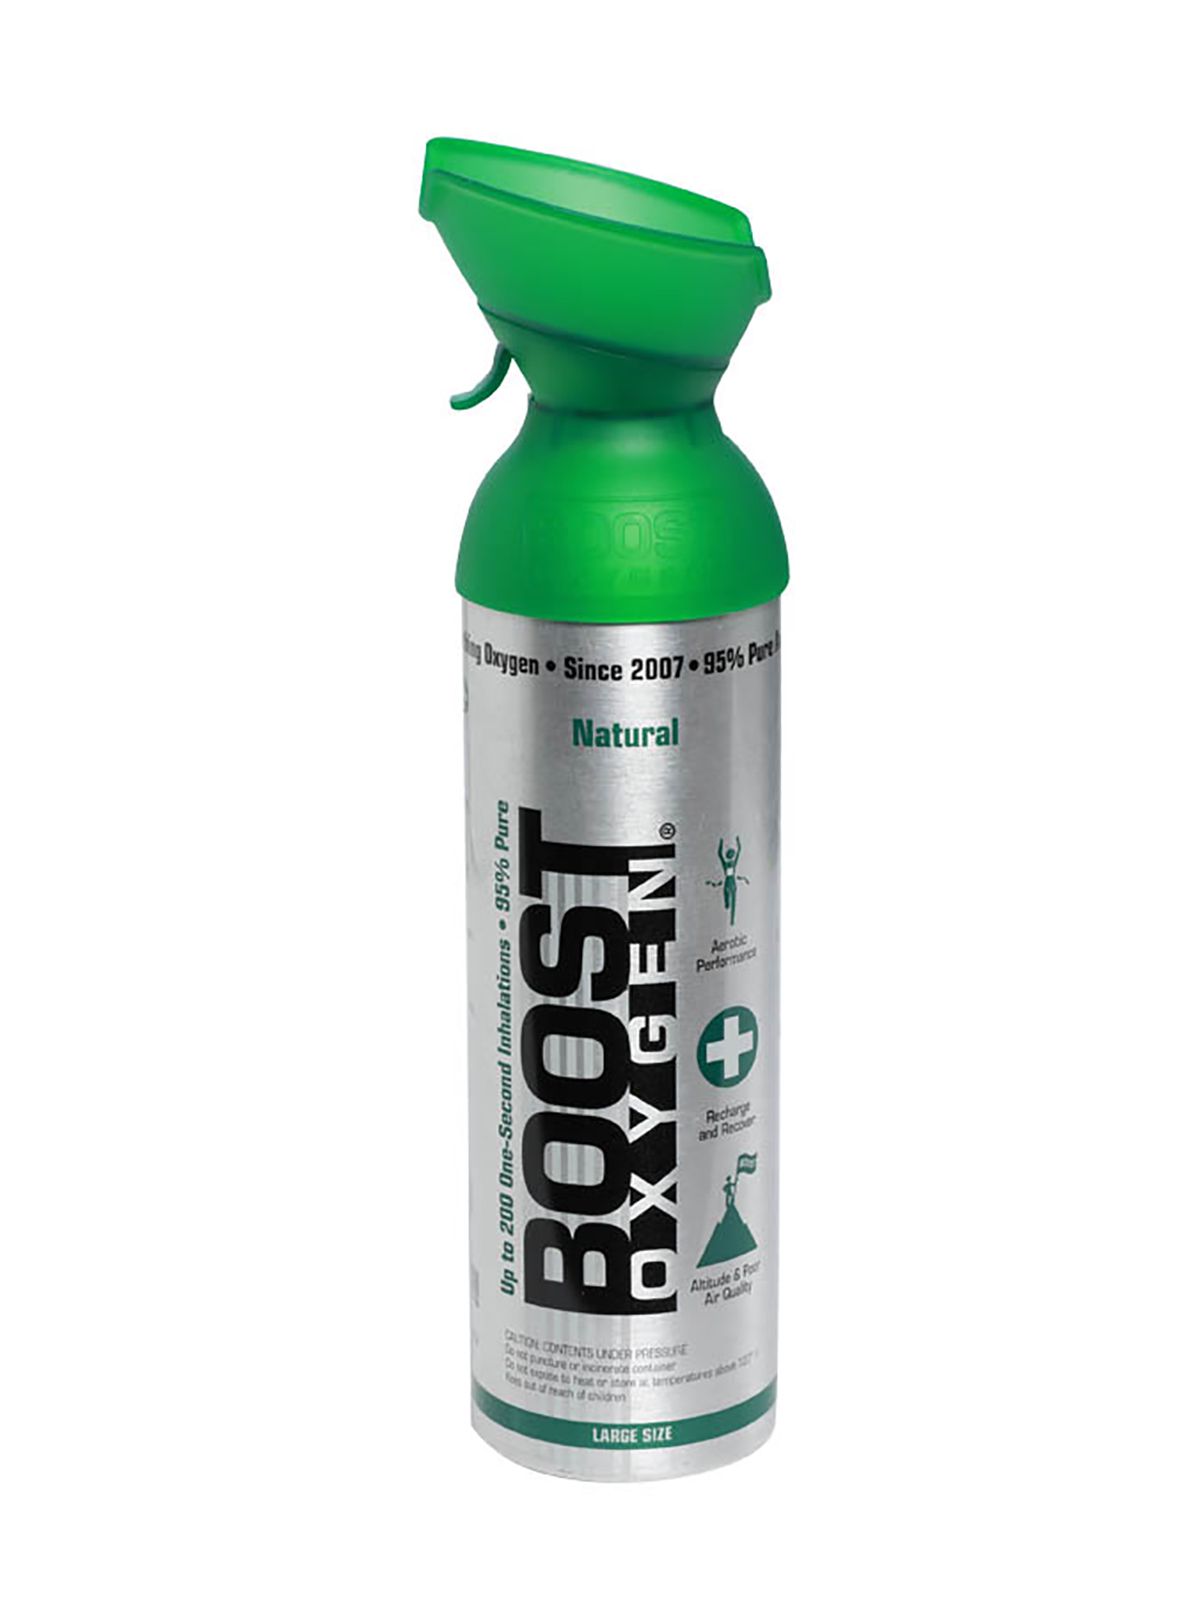 Boost Oxygen Natural - 95% reiner Sauerstoff, 9 Liter Dose (ca. 200 Boost Oxygen Shots)